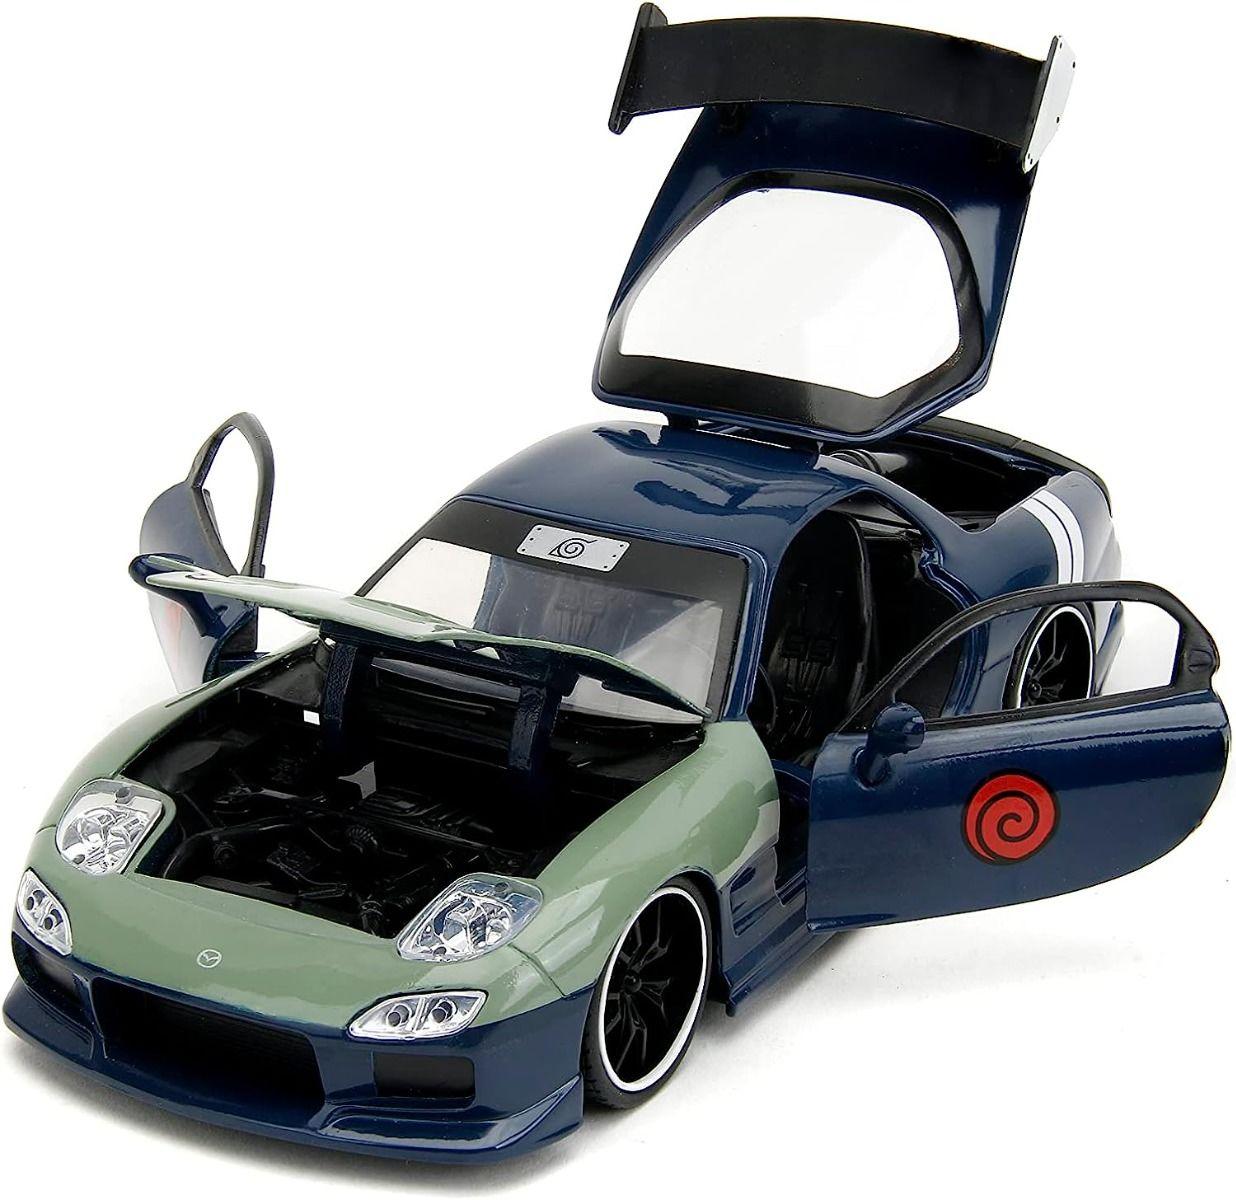 JAD34370 Naruto - Mazda RX-7 With Kakashi Figure 1:24 Scale Vehicle - Jada Toys - Titan Pop Culture